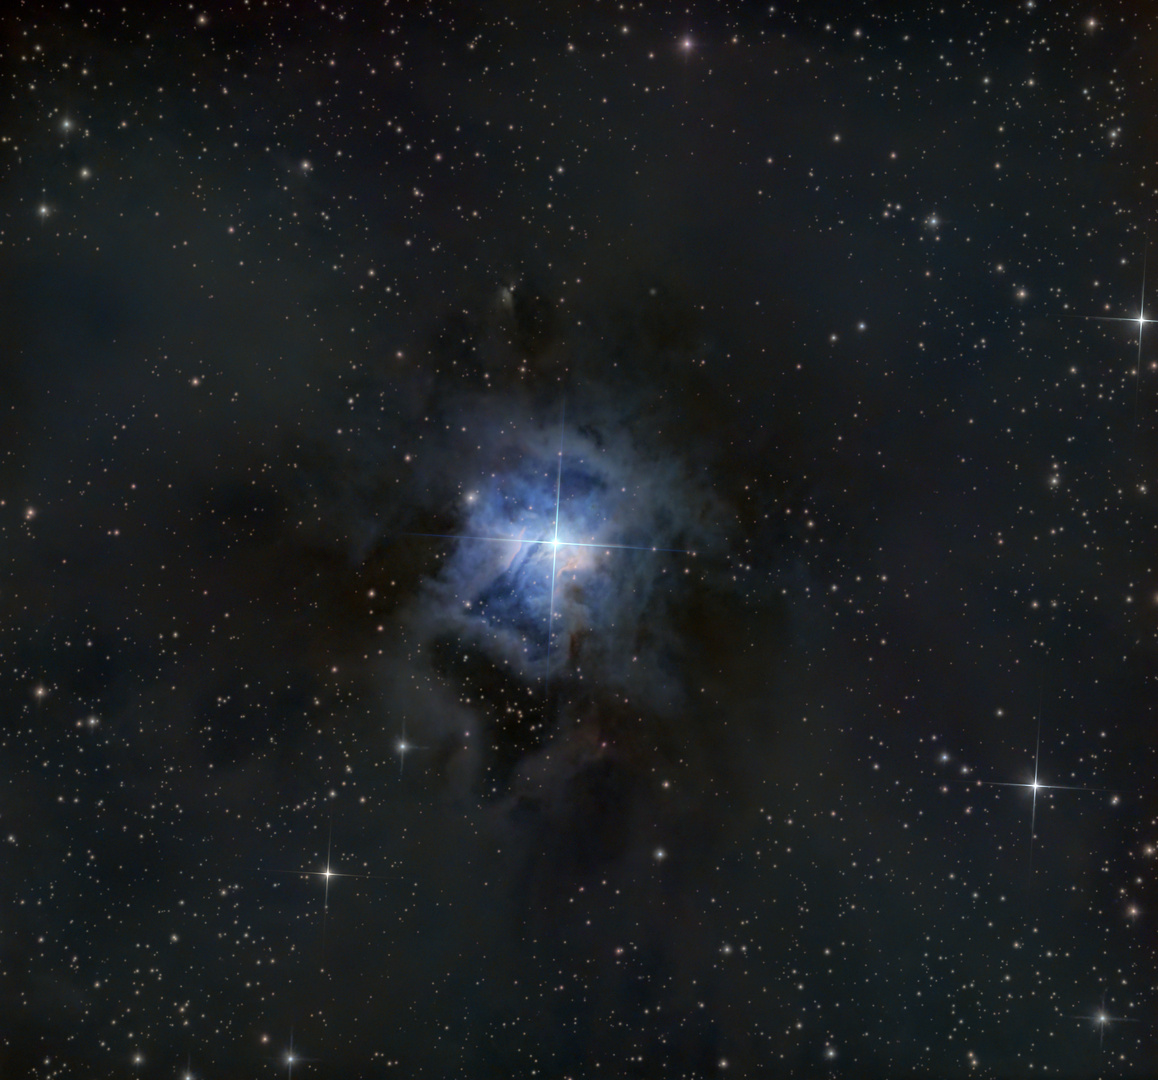 NGC7023 (Irisnebel)